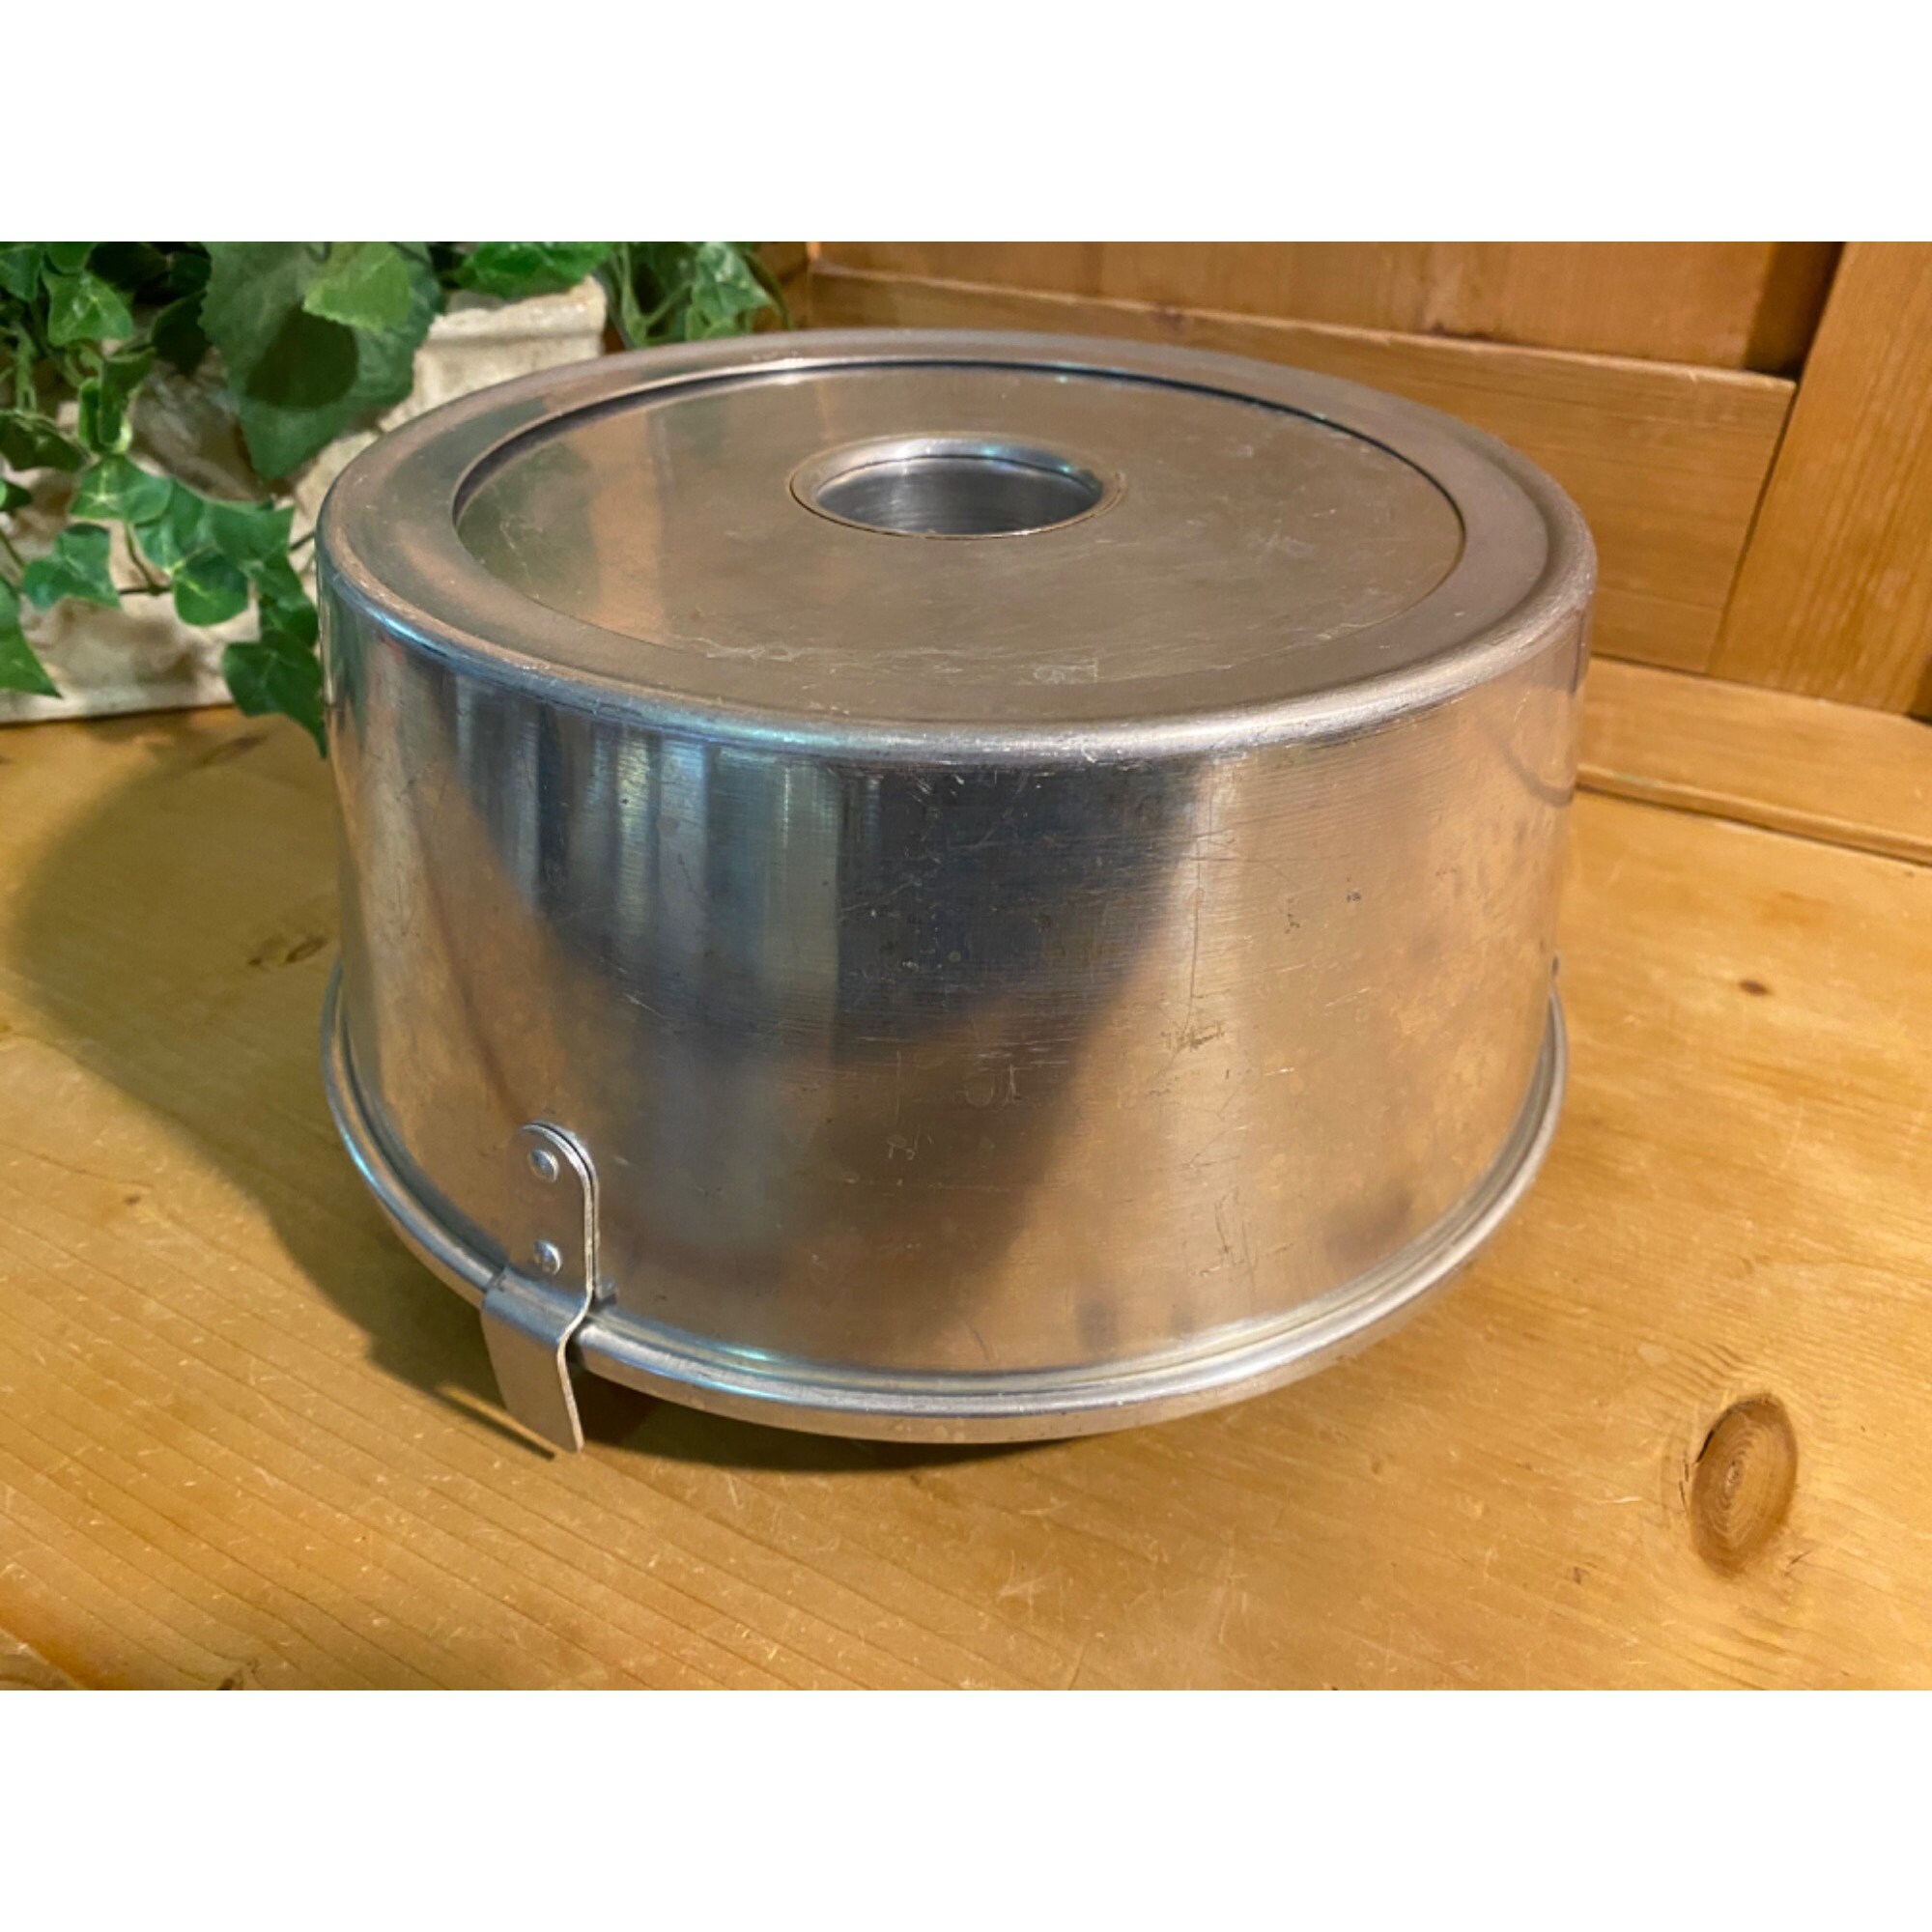 Vintage Metal Baking Pans - Heirloomed